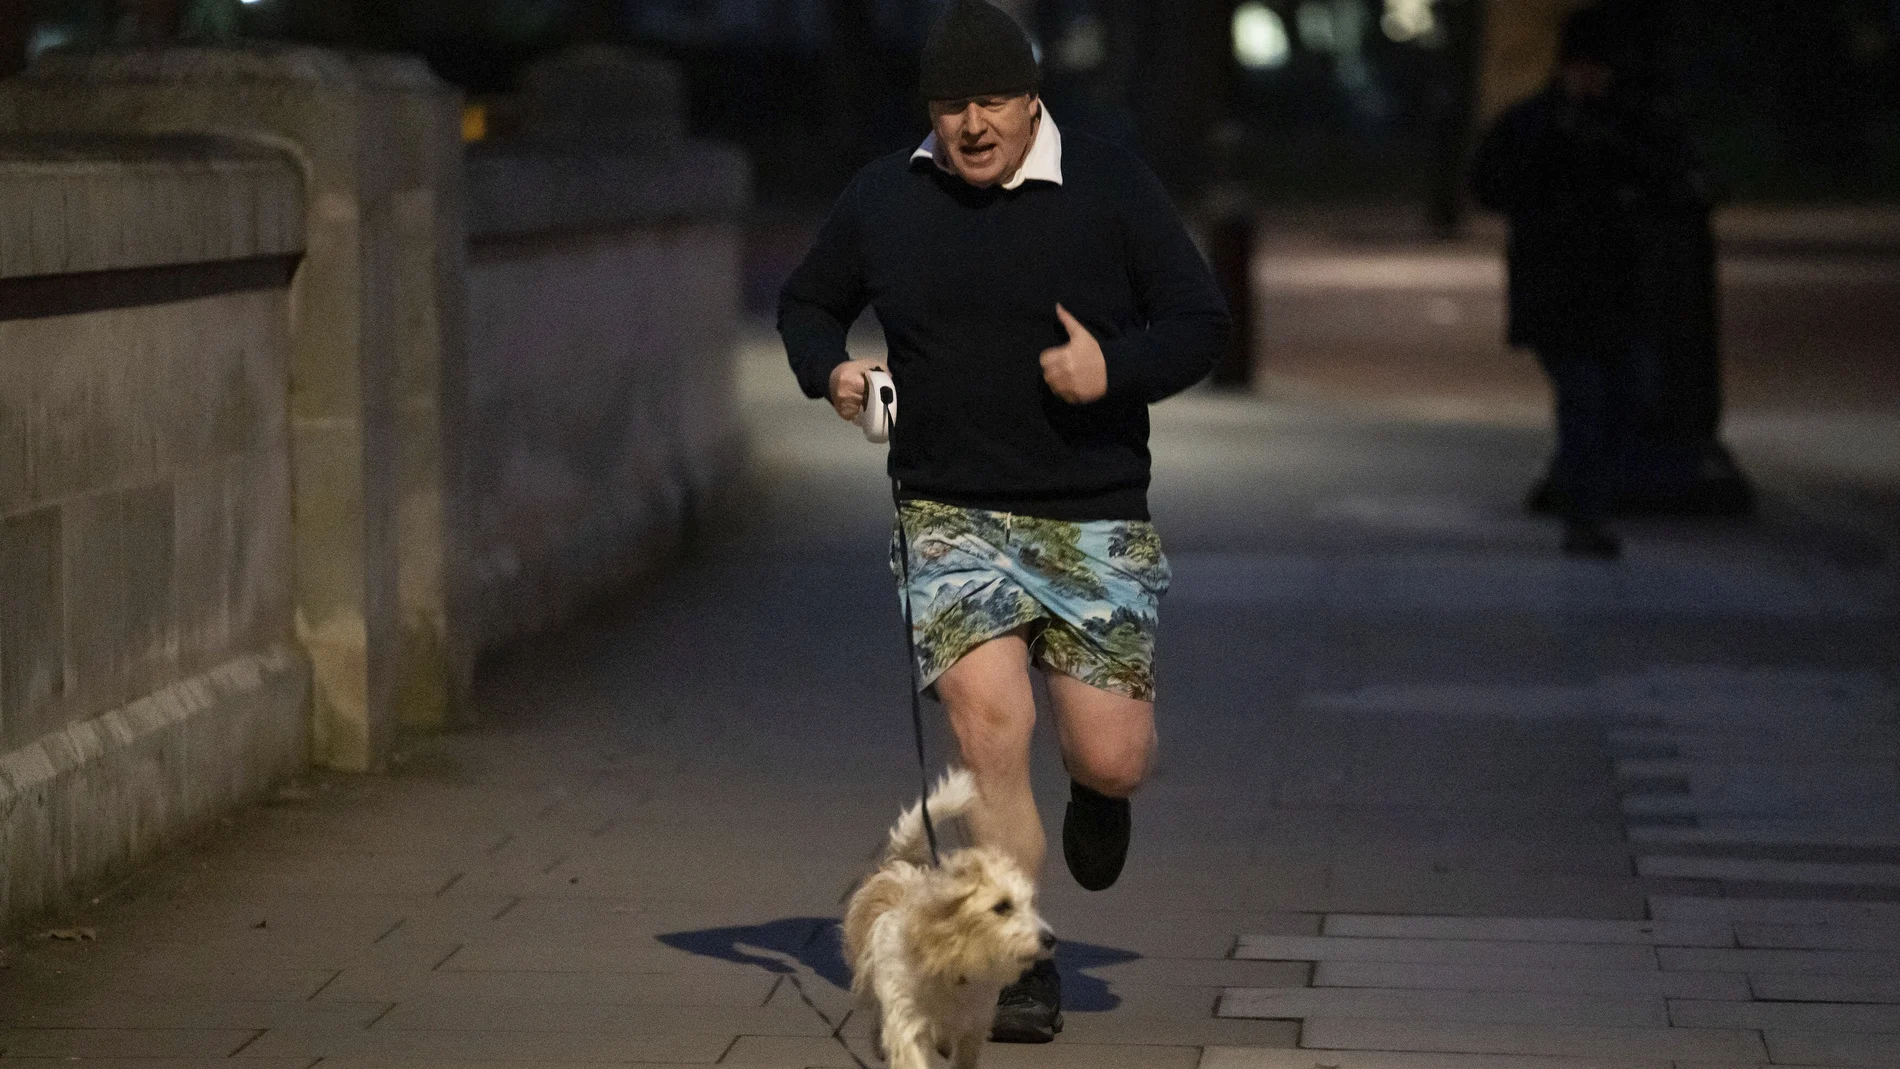 El primer ministro, Boris Johnson, sale a correr por el centro de Londres con ese atuendo